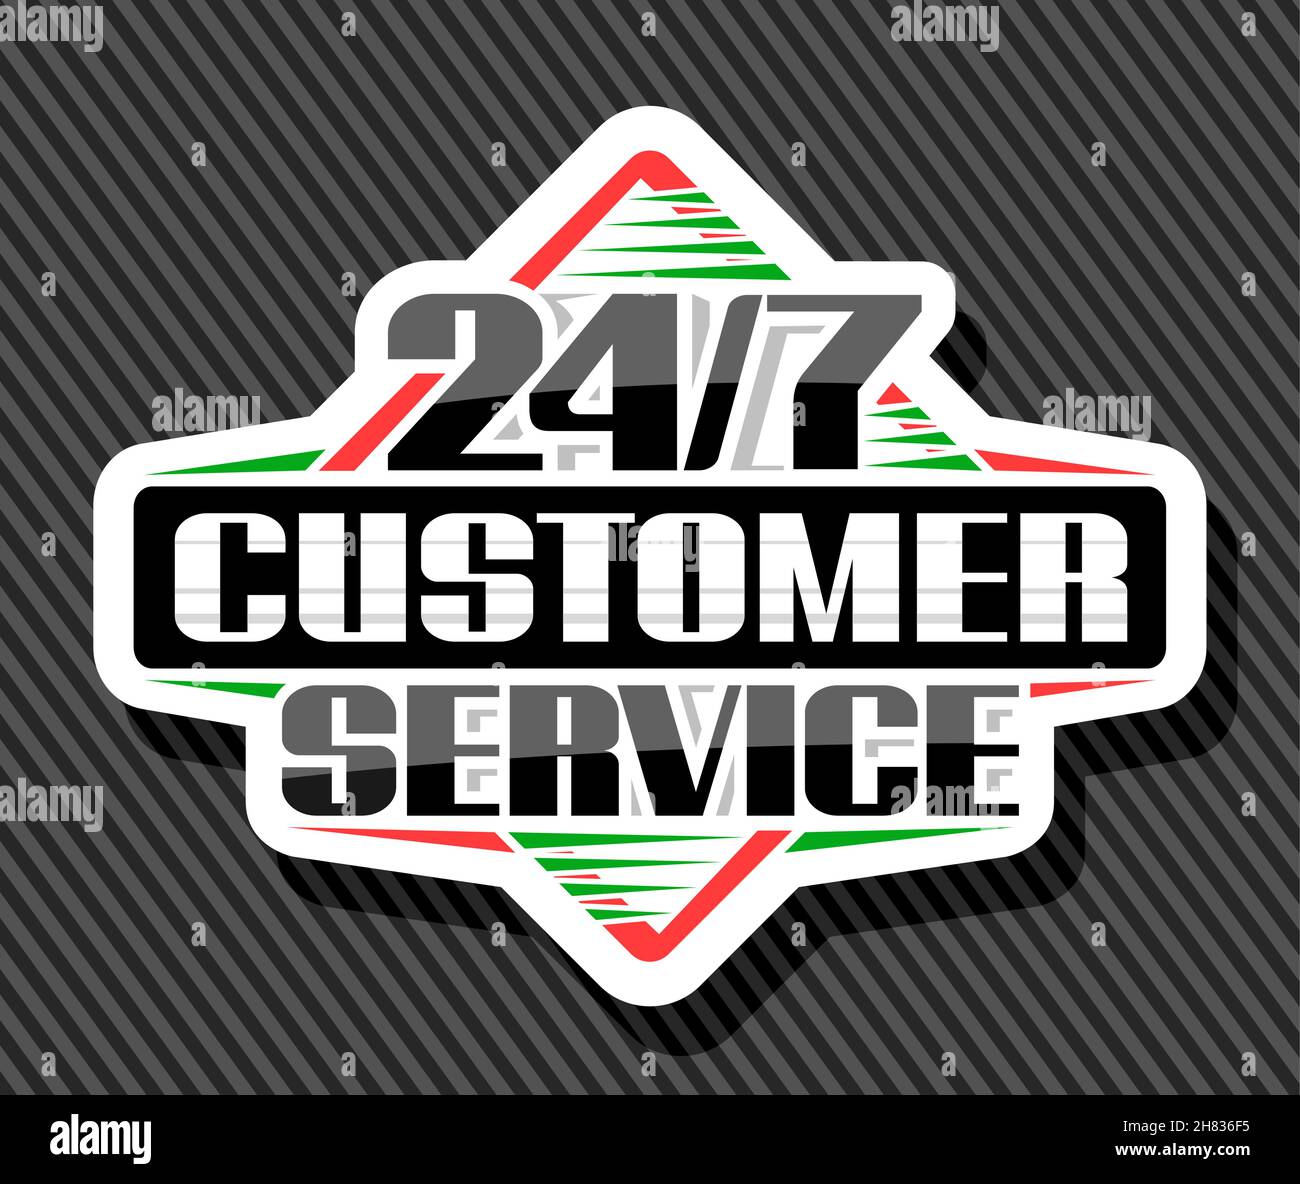 Vector Schild 24/7 Customer Service, weißes Dekoretikett mit einzigartigem Pinselschriftzug für schwarze Wörter 24/7 Customer Service, isoliertes Rhombus-Geschäft Stock Vektor